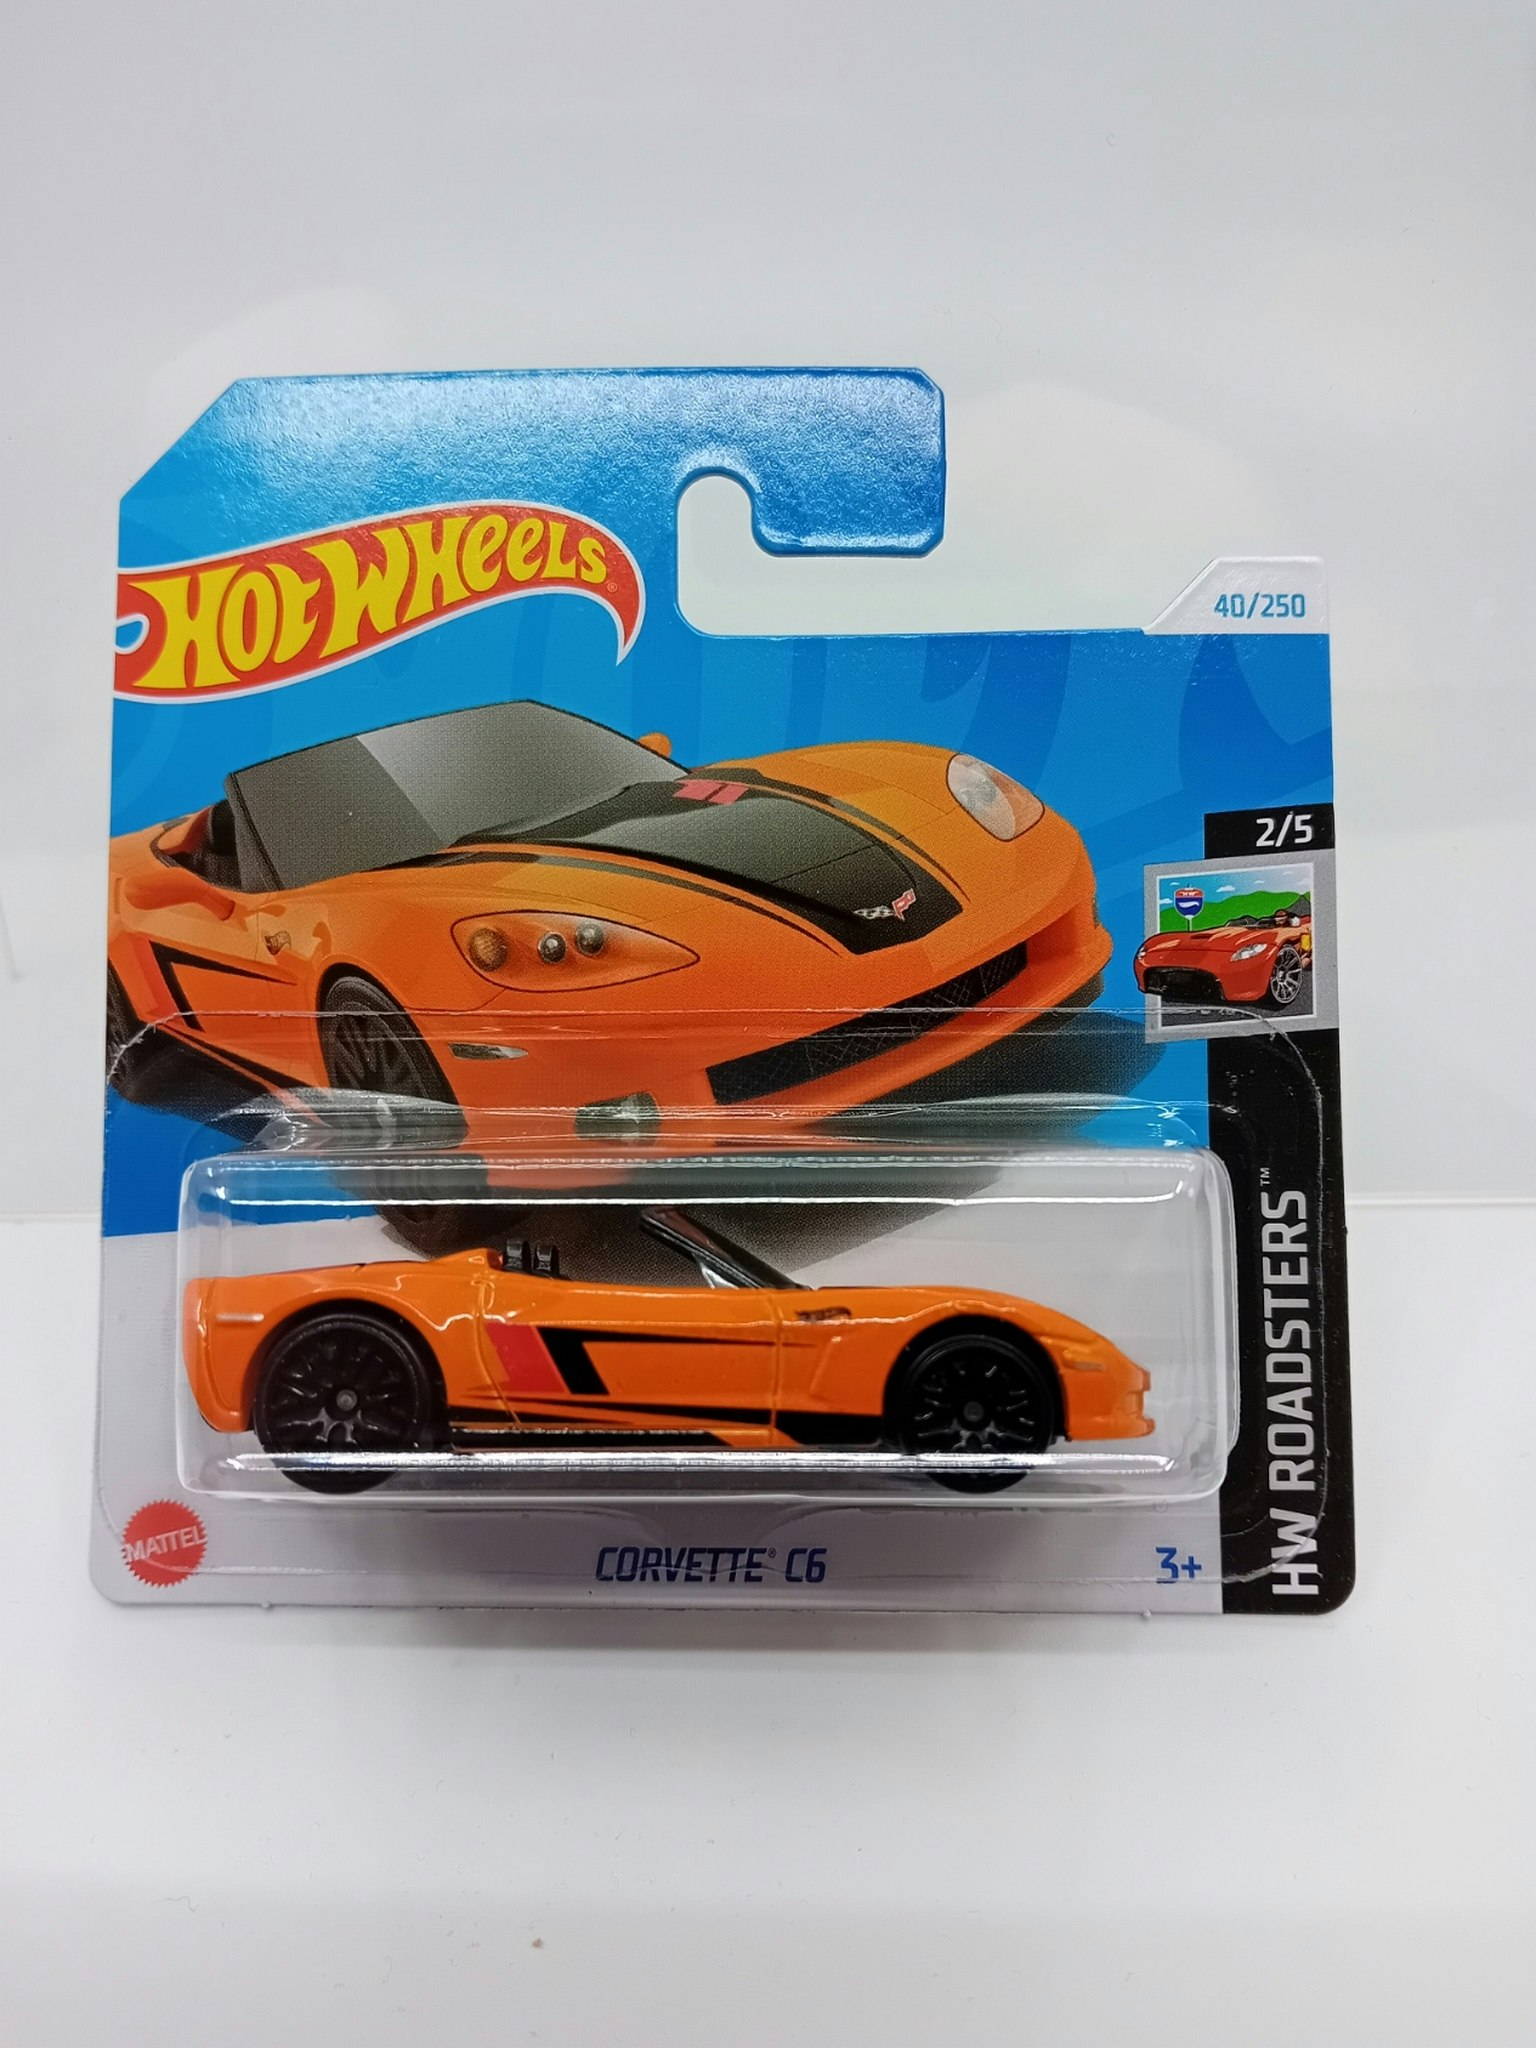 Corvette C6 Orange #040